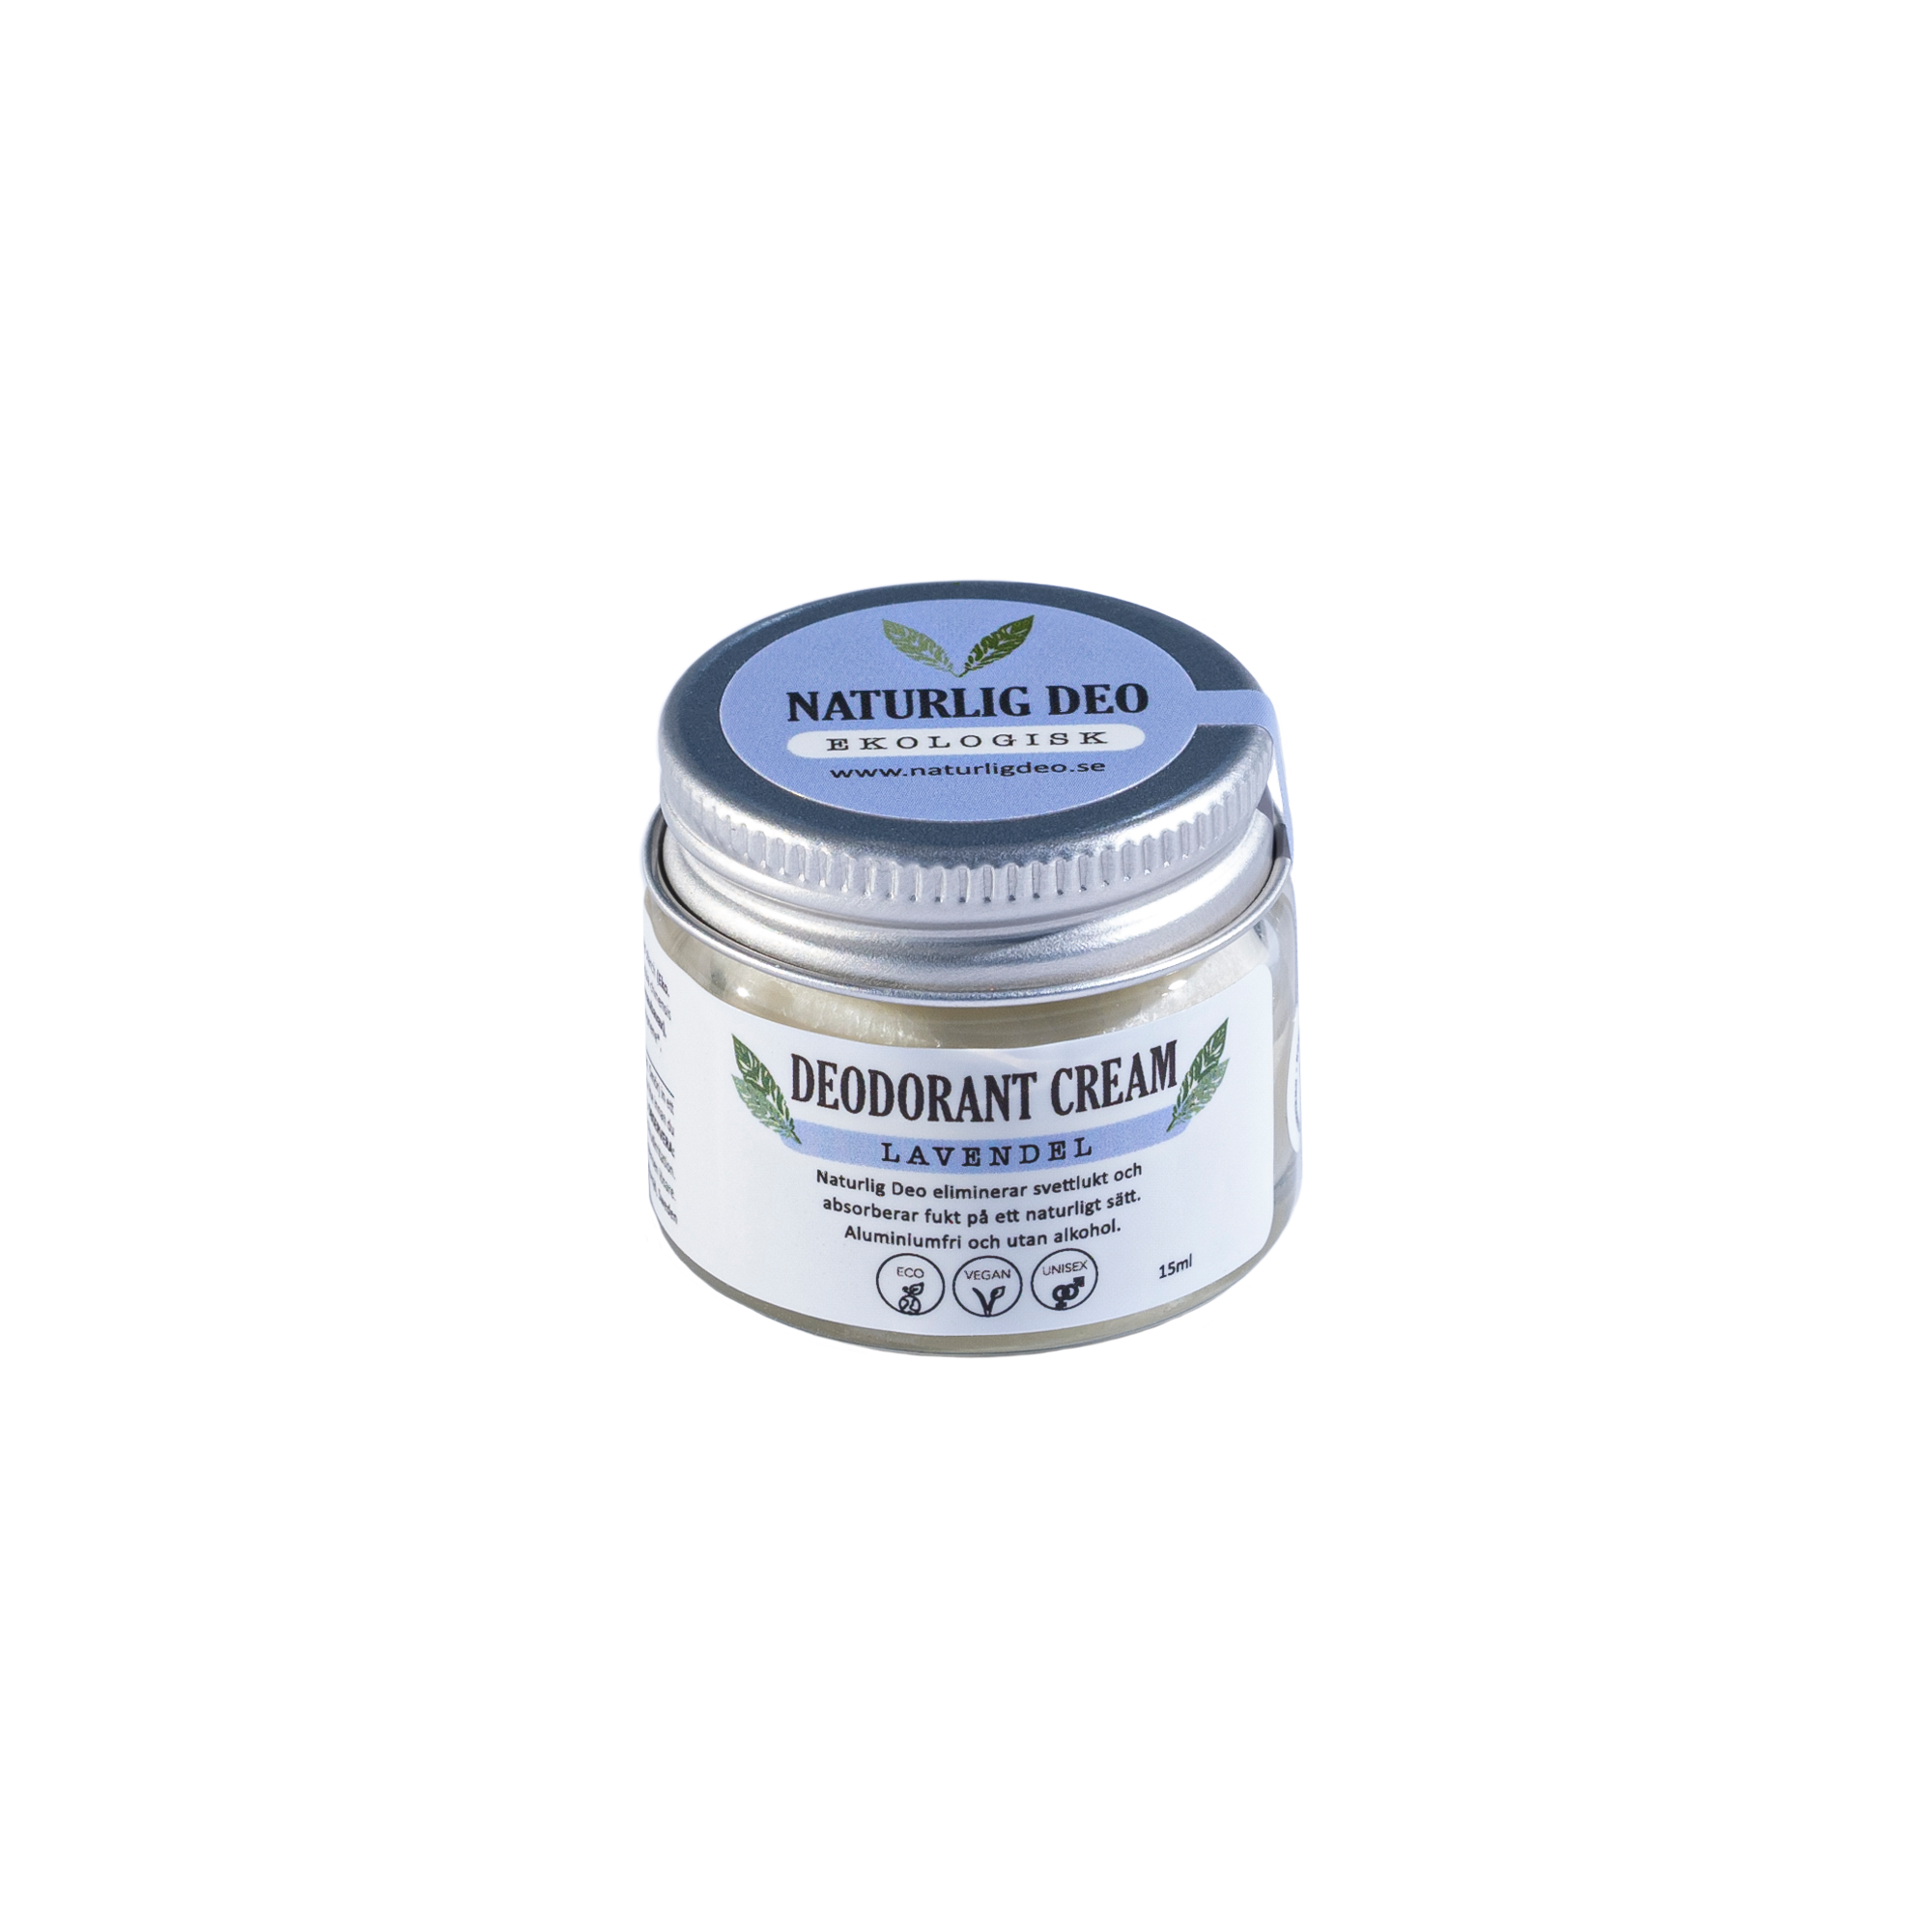 Naturil Deo - ekologisk deodorant cream 15 ml - Lavendel